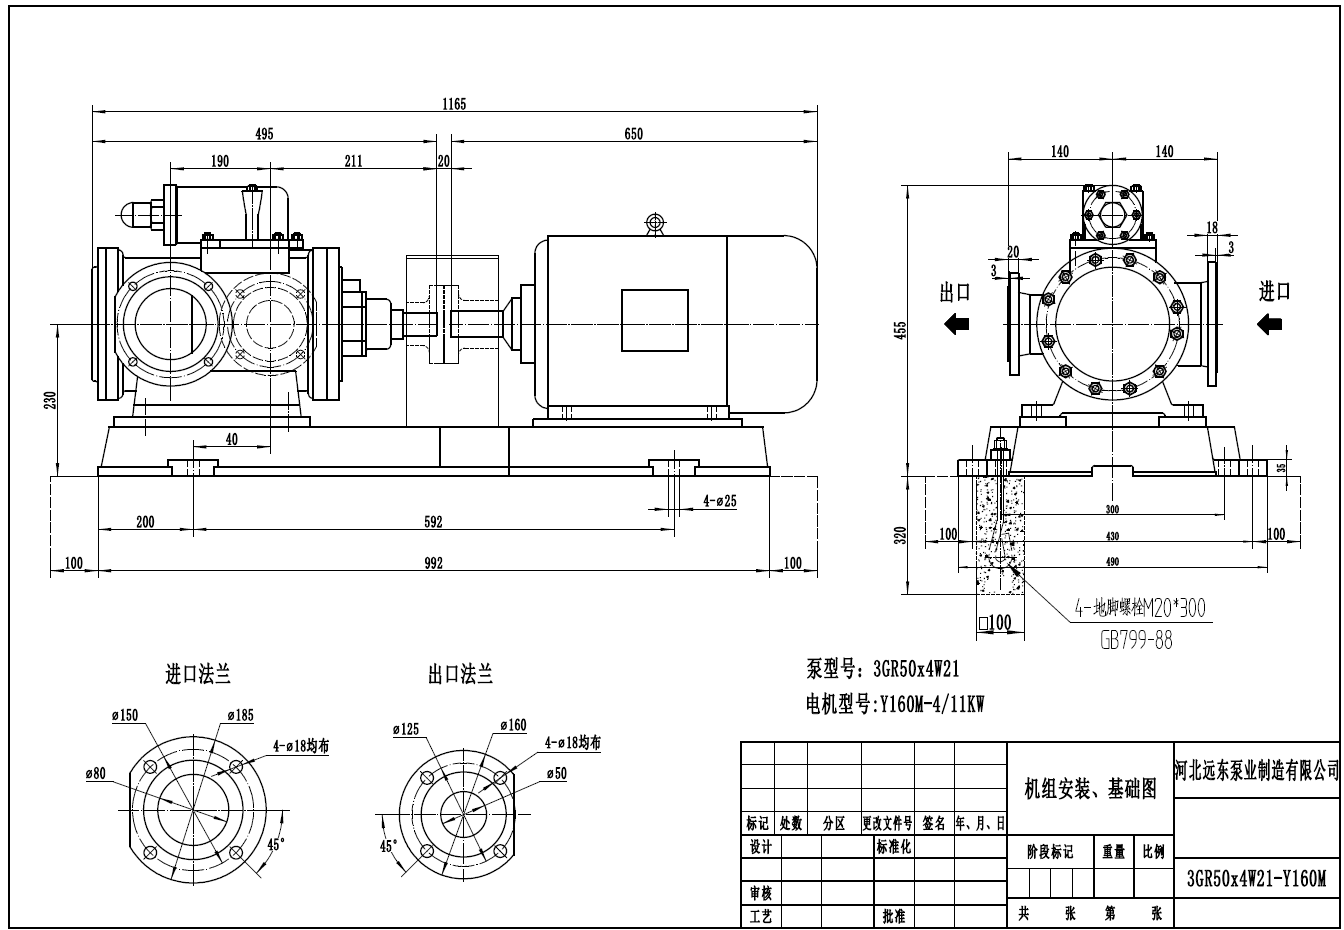 污滑油输送泵3GR50*4W21三螺杆泵配11kw-4电机外形尺寸图